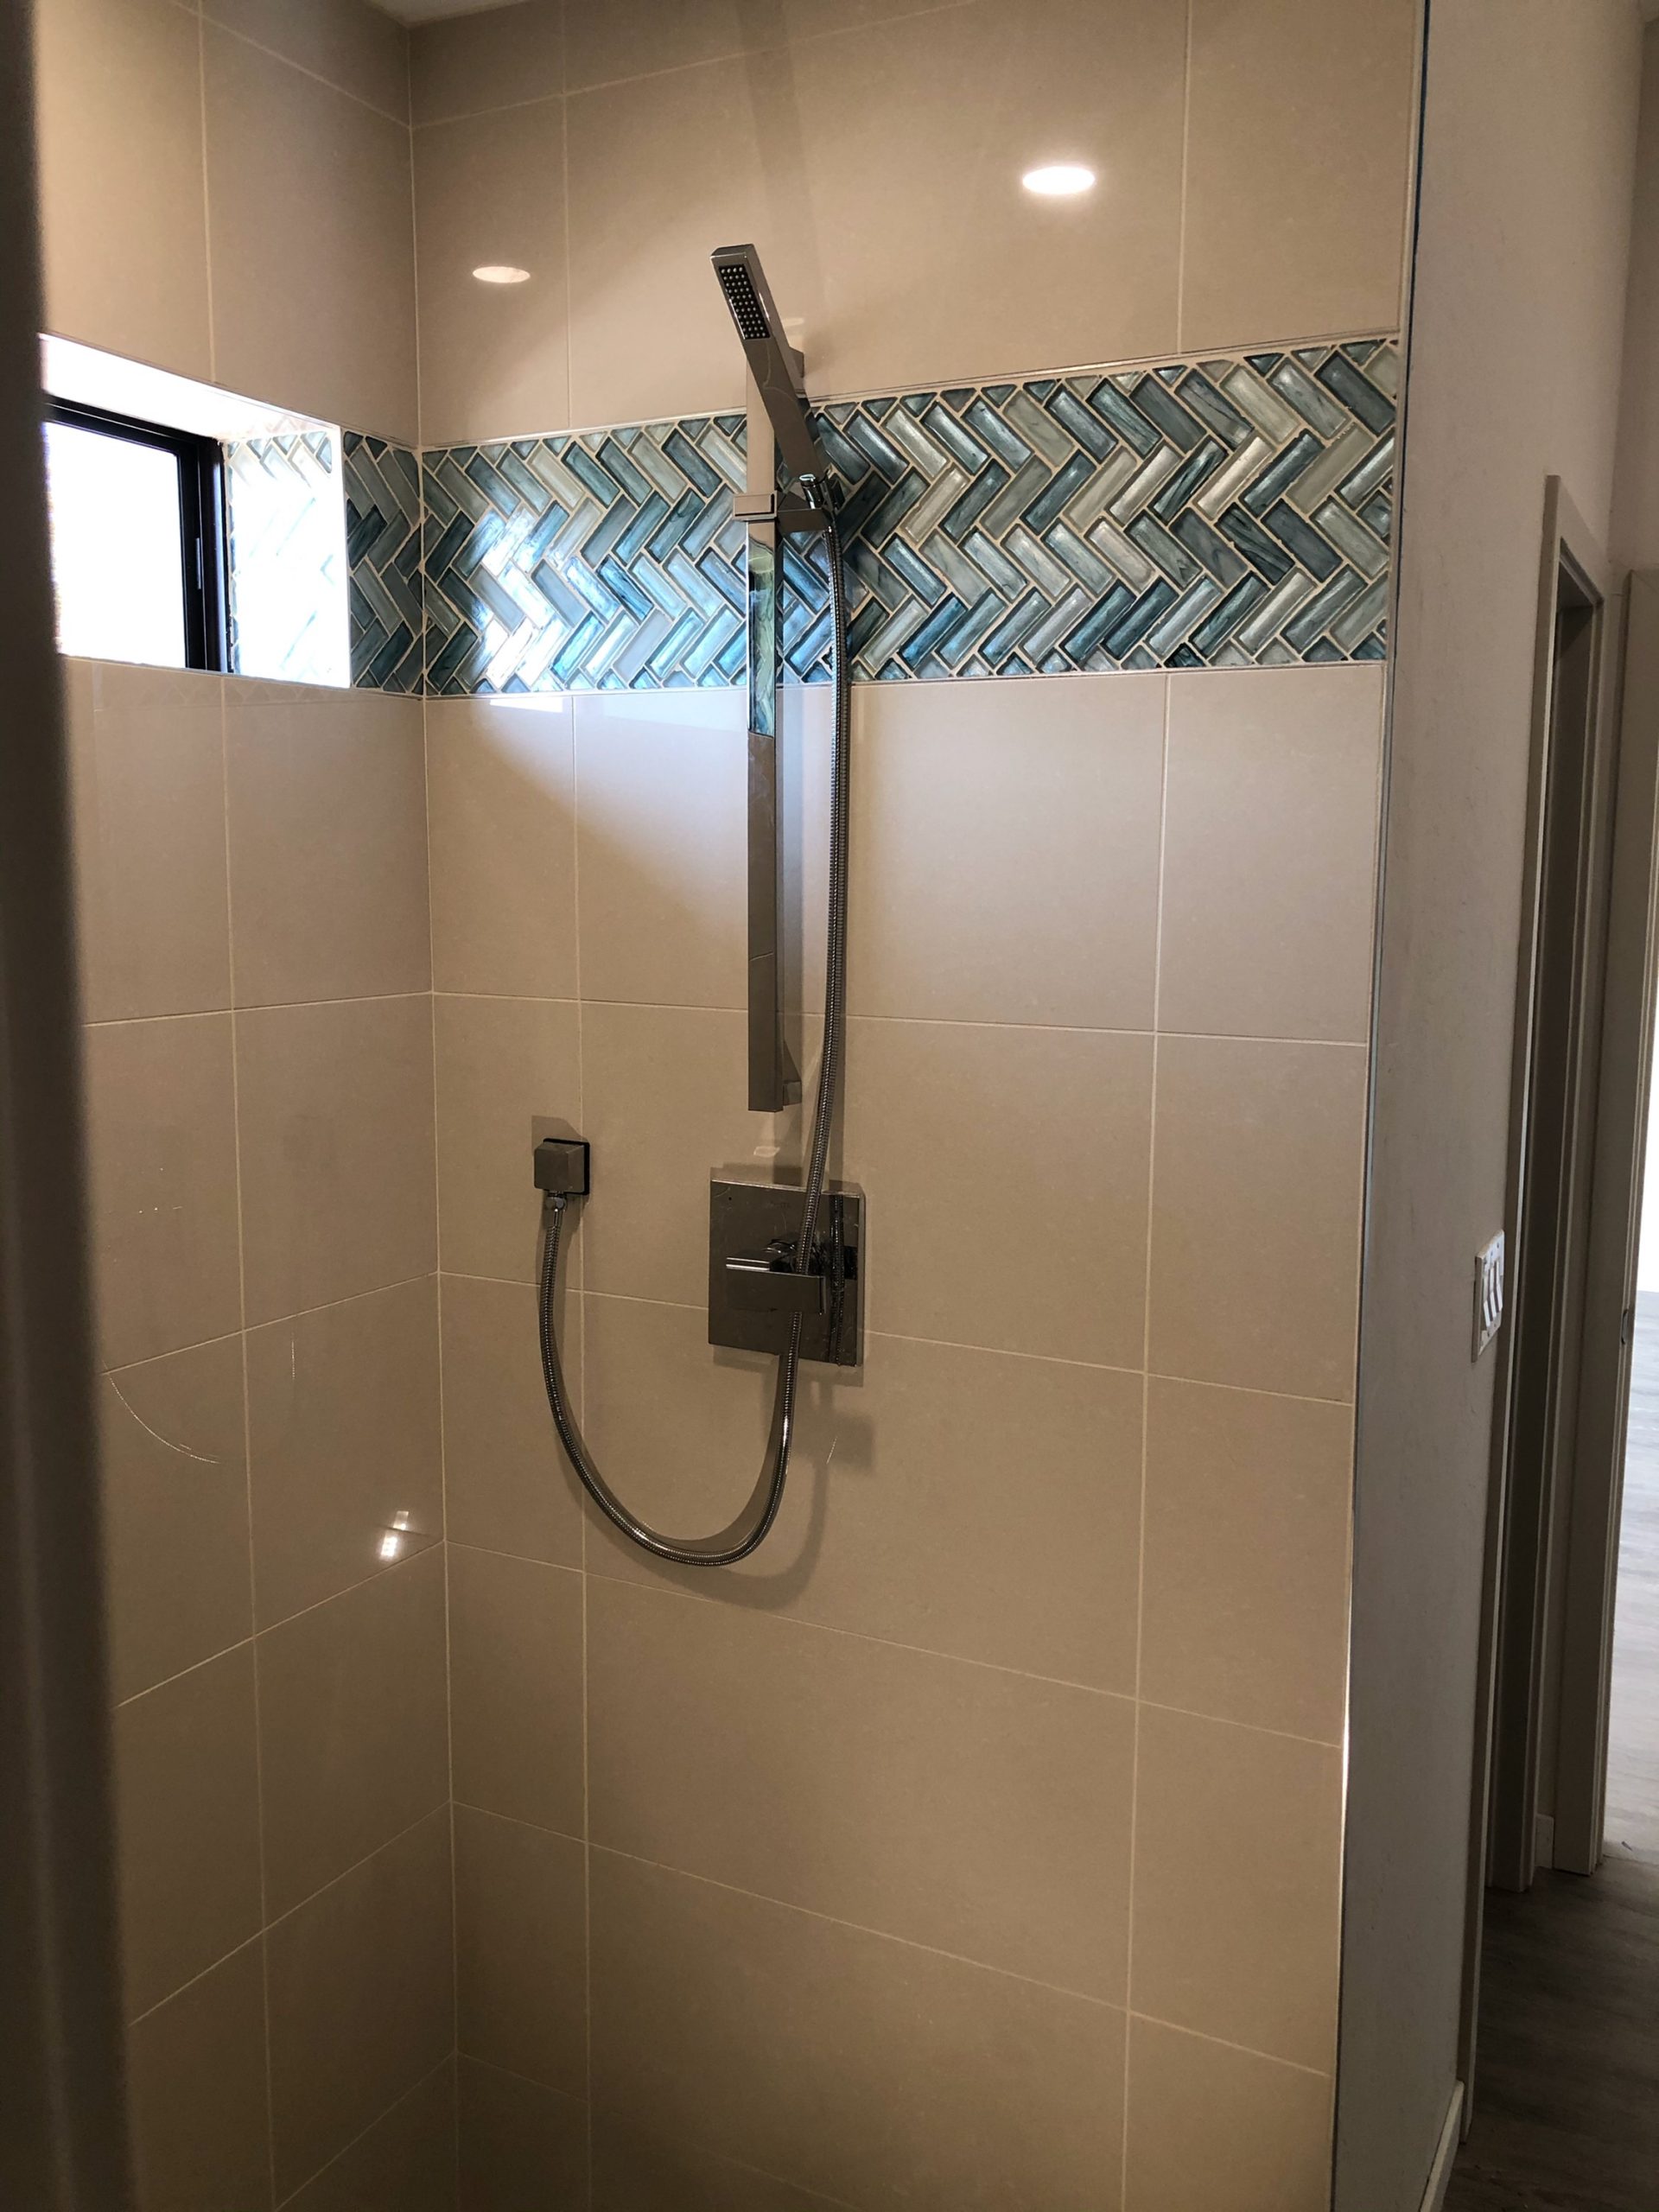 New shower plumbing hardware.